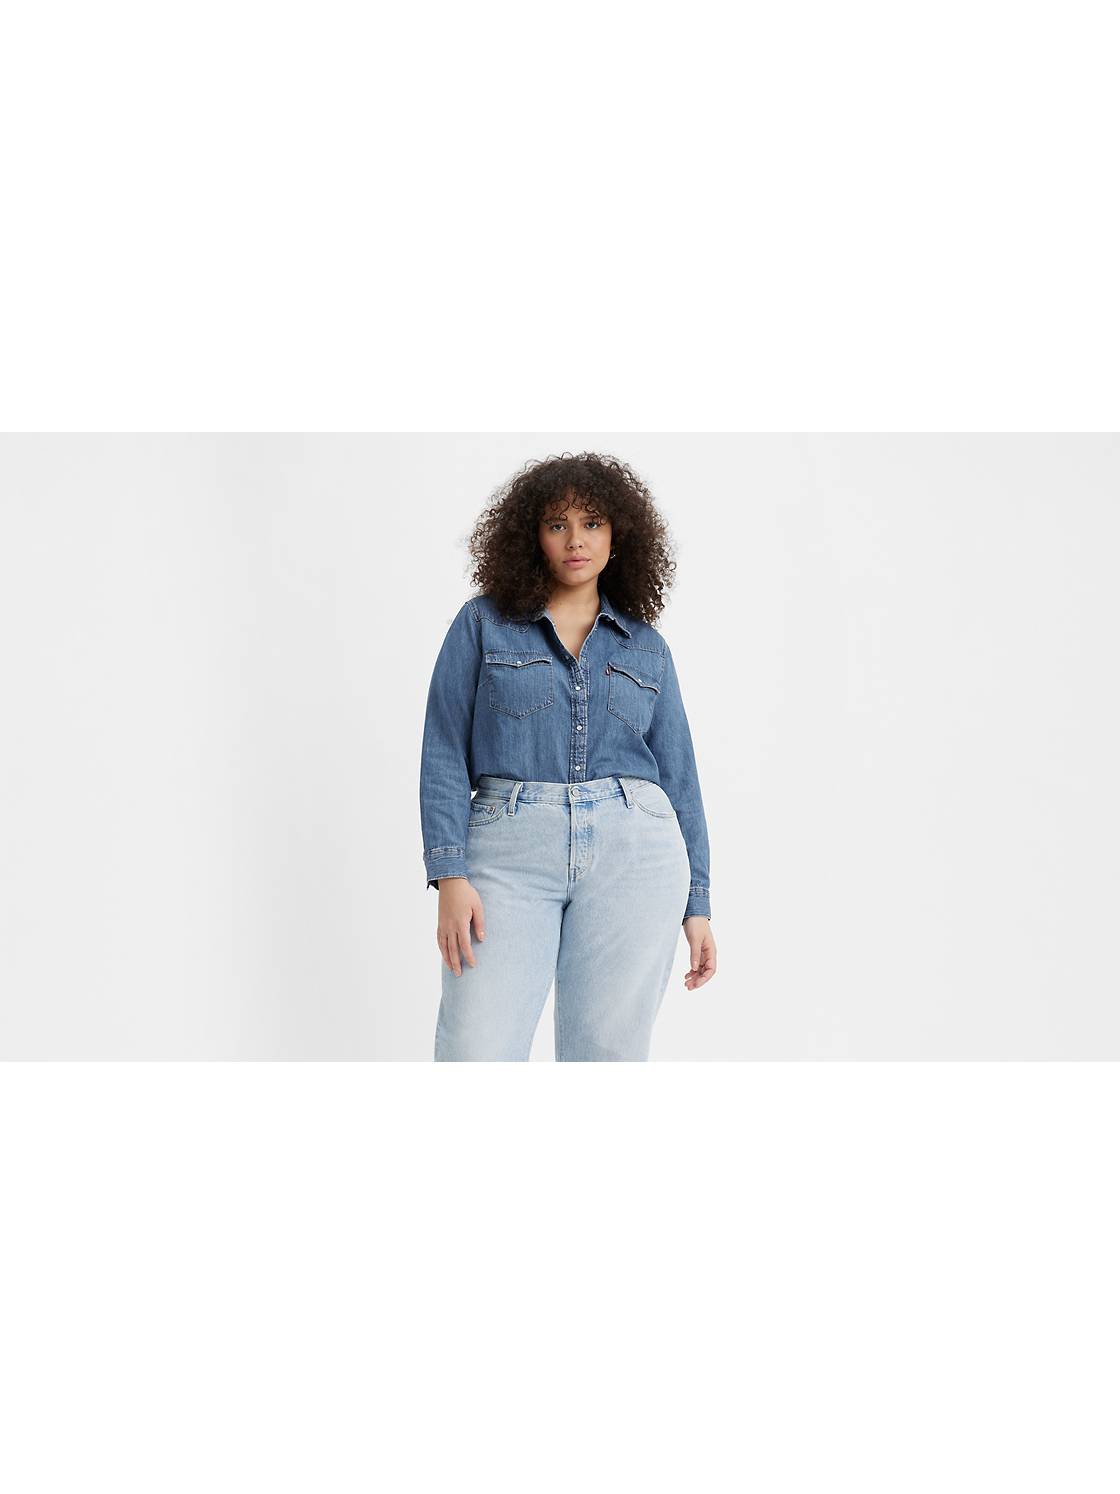 Shop Women's Plus Size Levi's Jeans